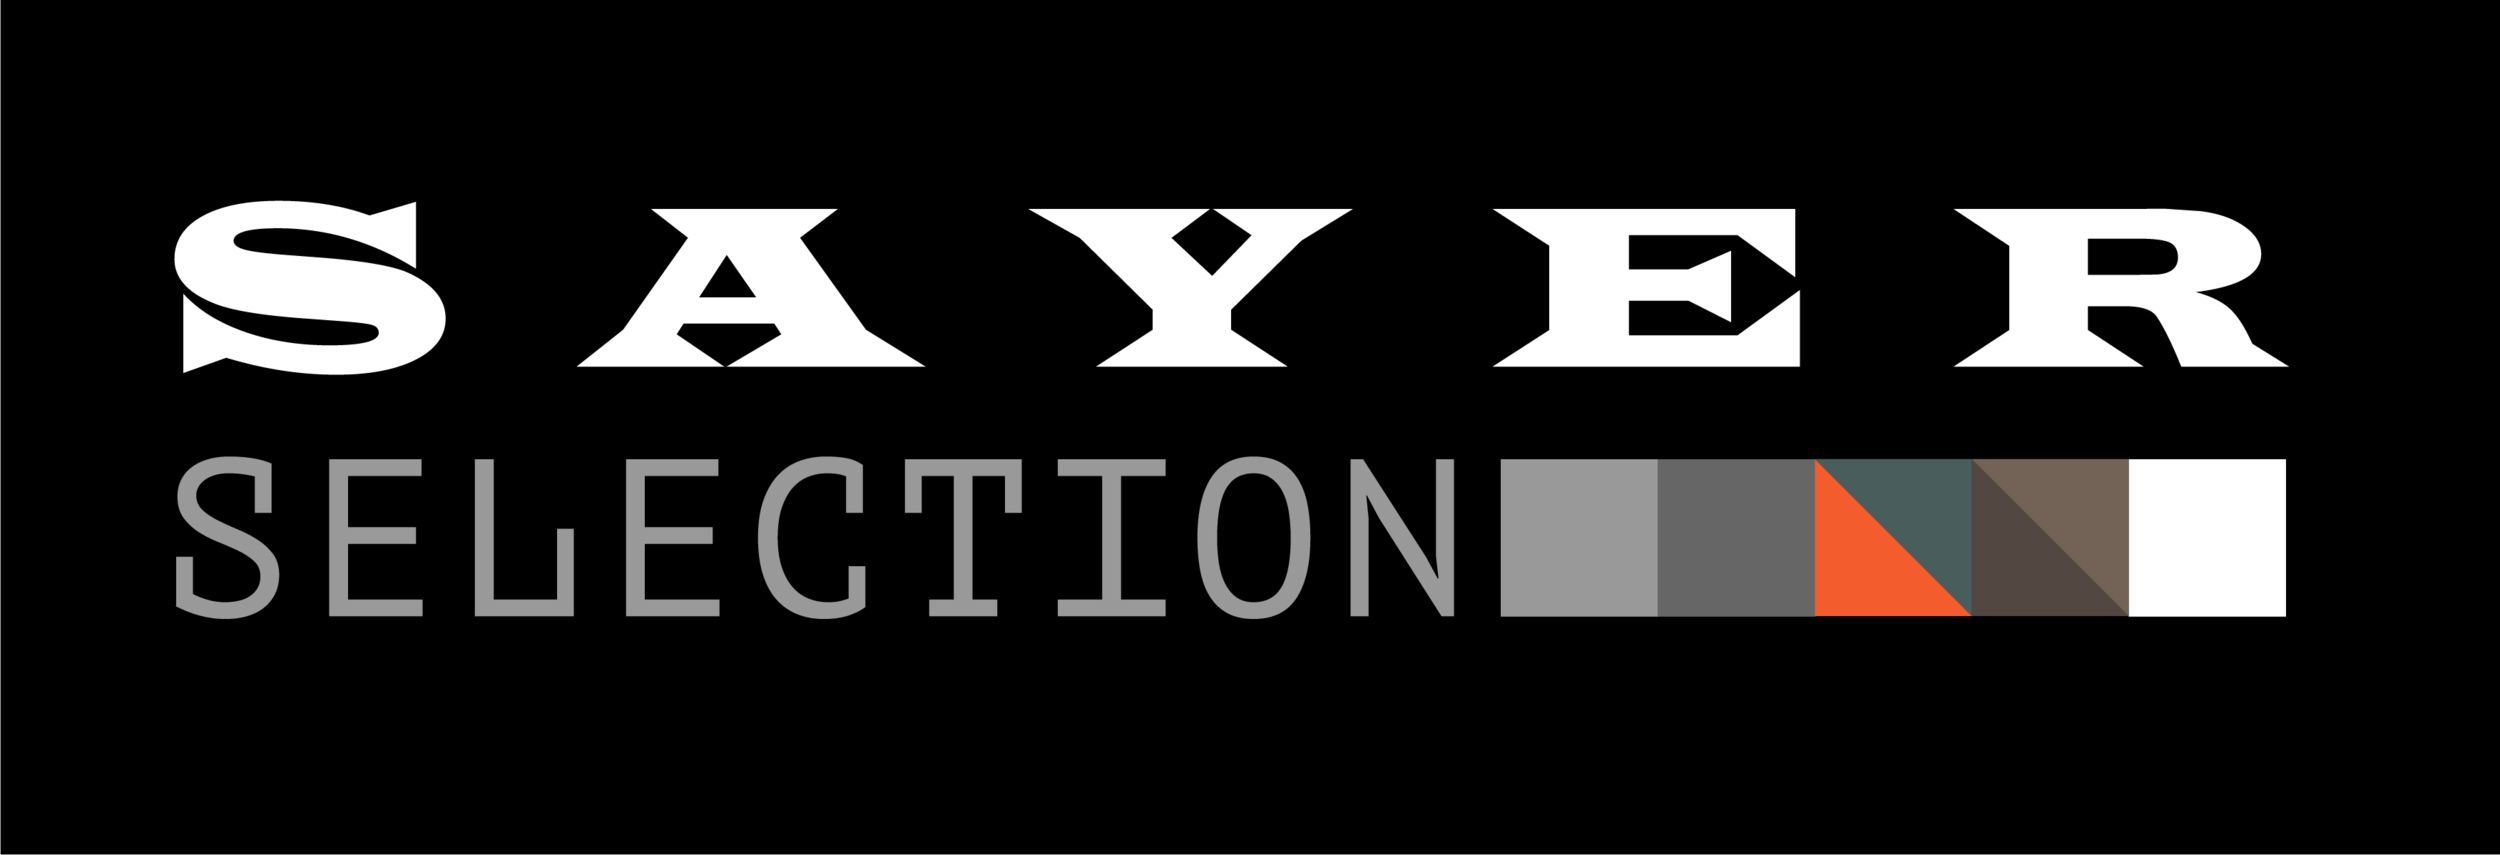 Sayer Selection